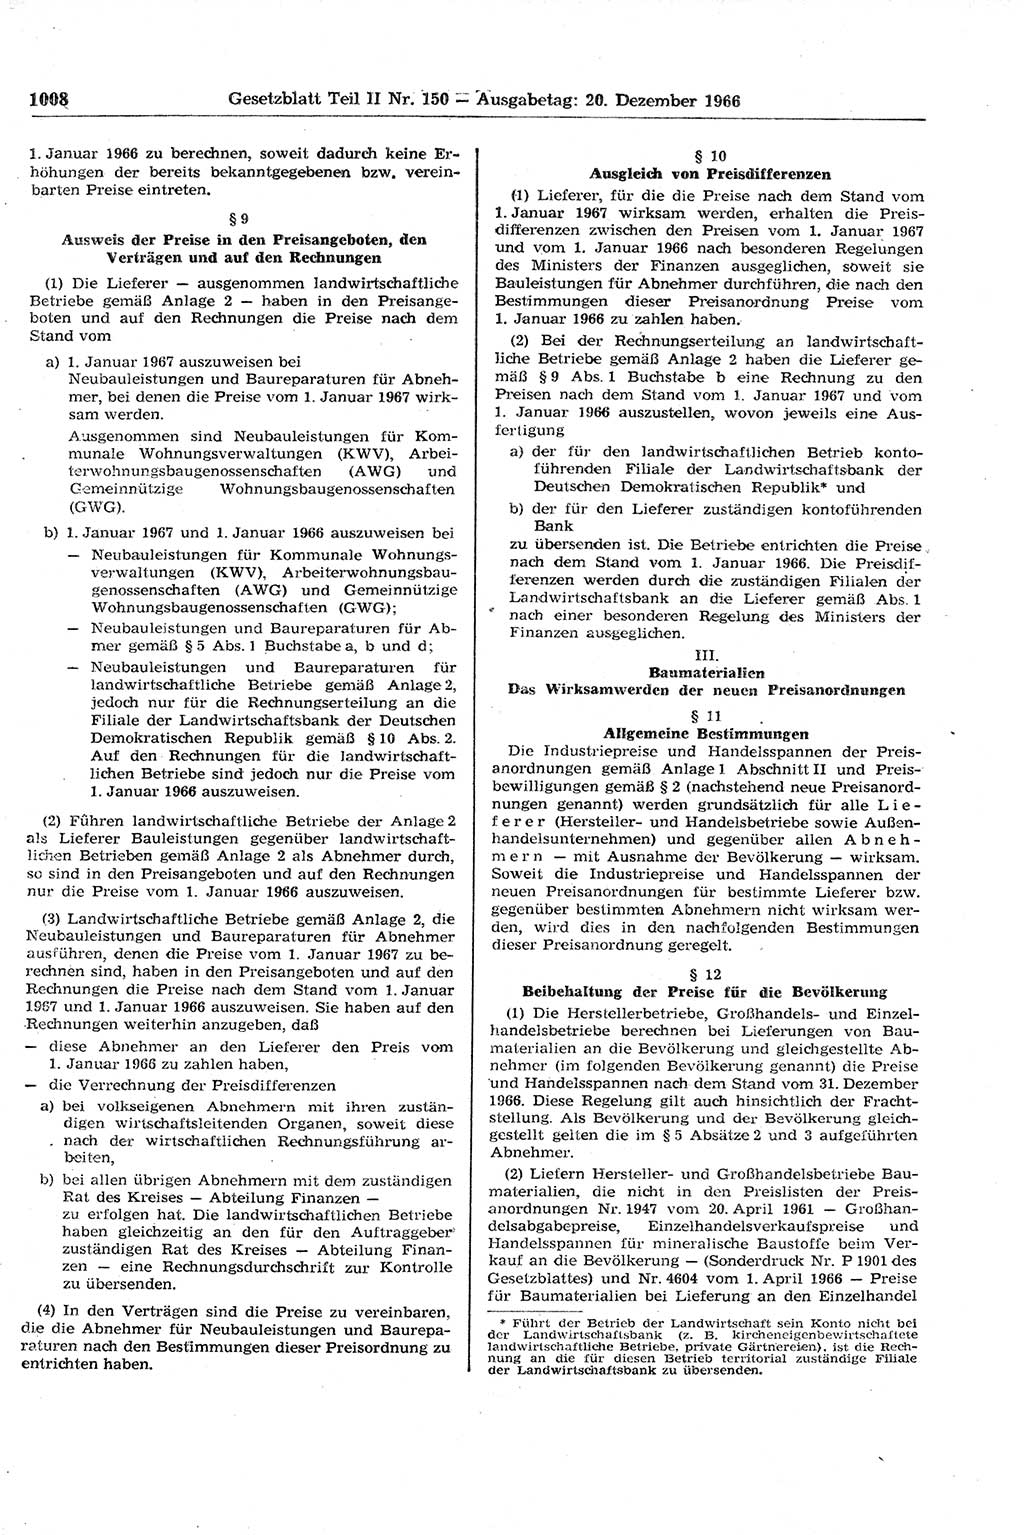 Gesetzblatt (GBl.) der Deutschen Demokratischen Republik (DDR) Teil ⅠⅠ 1966, Seite 1008 (GBl. DDR ⅠⅠ 1966, S. 1008)